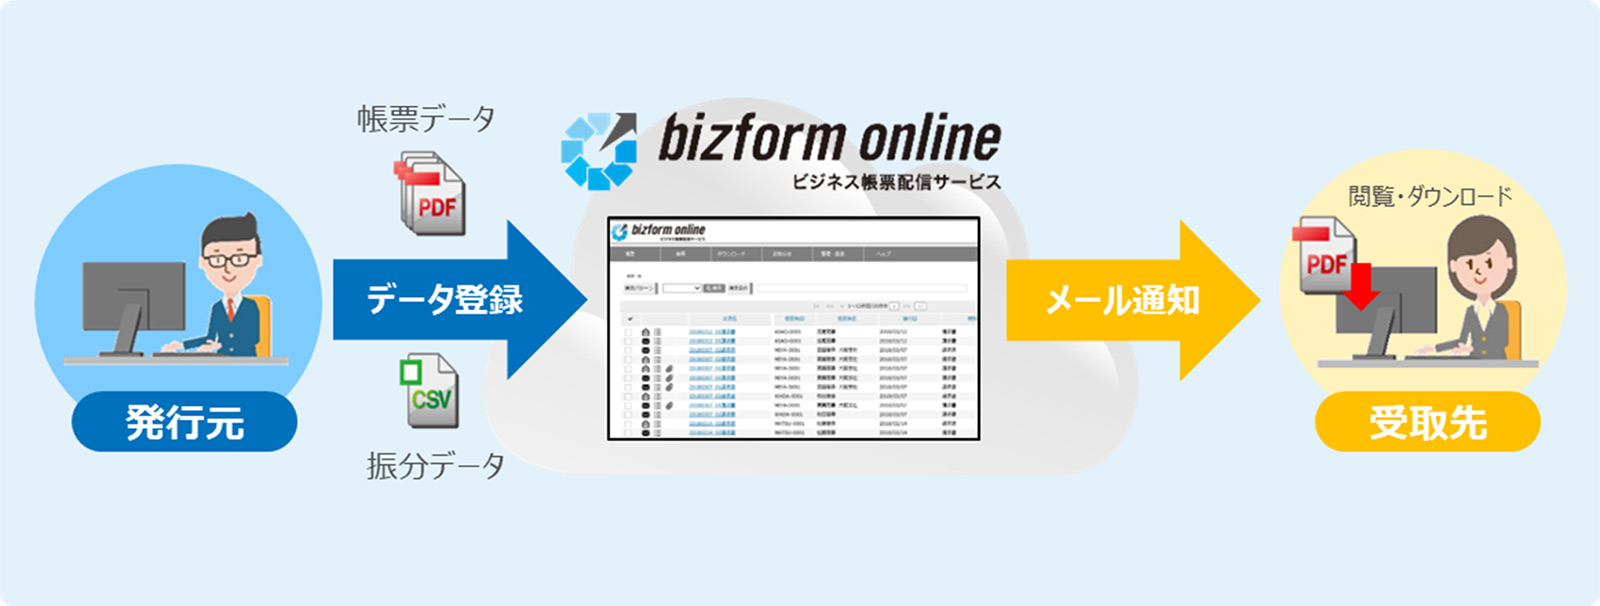 キヤノンマーケティングジャパンで利用しているこのWEB配信サービスは、「bizform online」というサービス名でお客様の請求書発行にもご利用いただけるサービスとして展開しております。